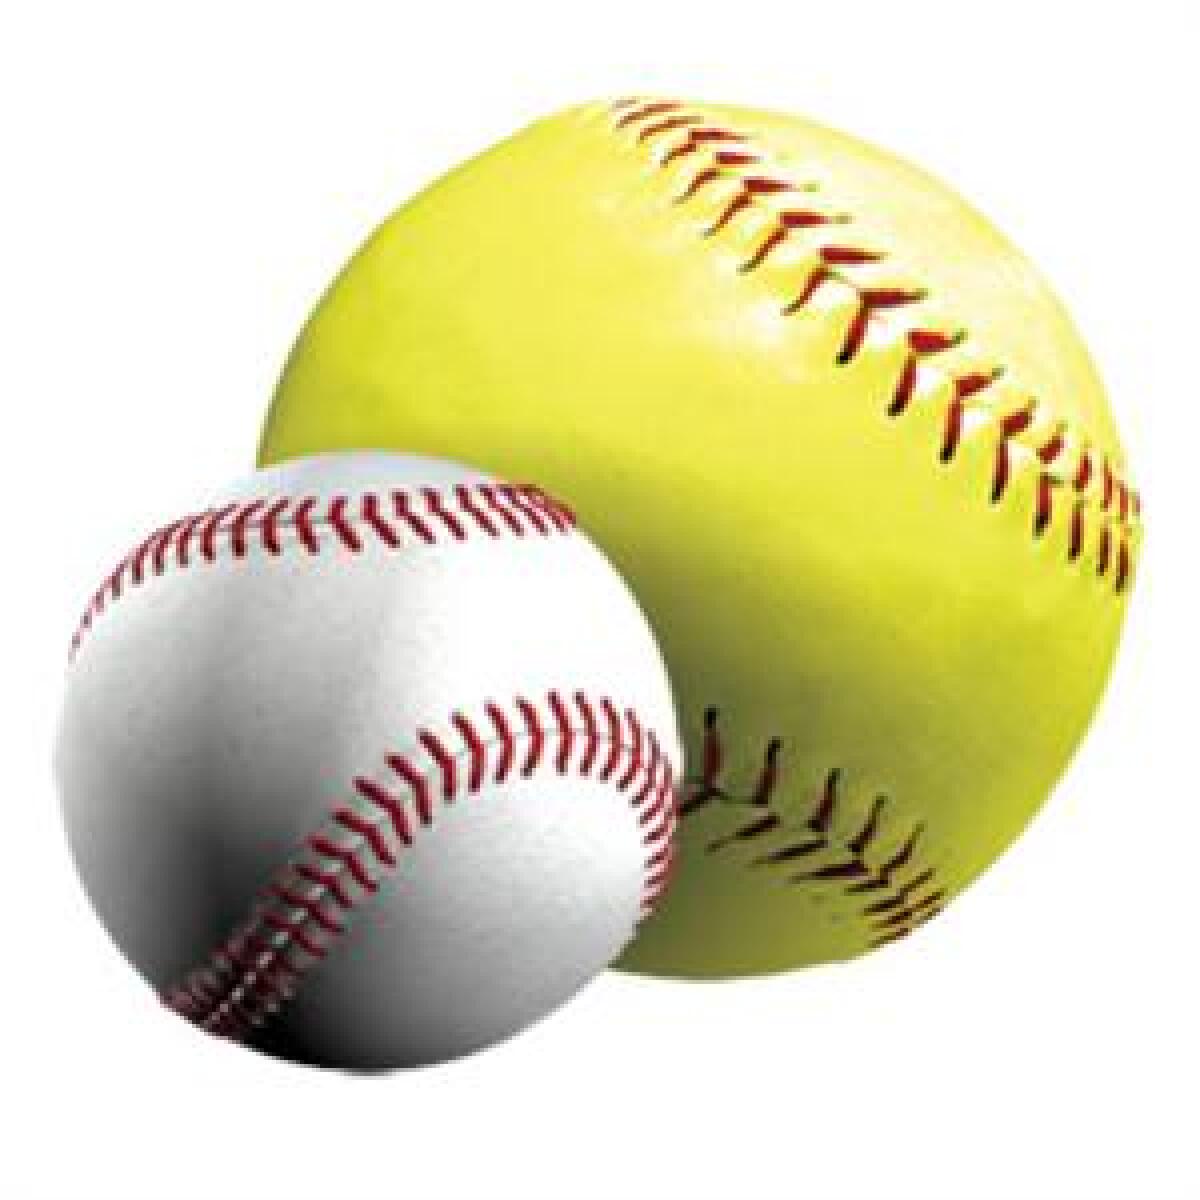 A softball and a baseball